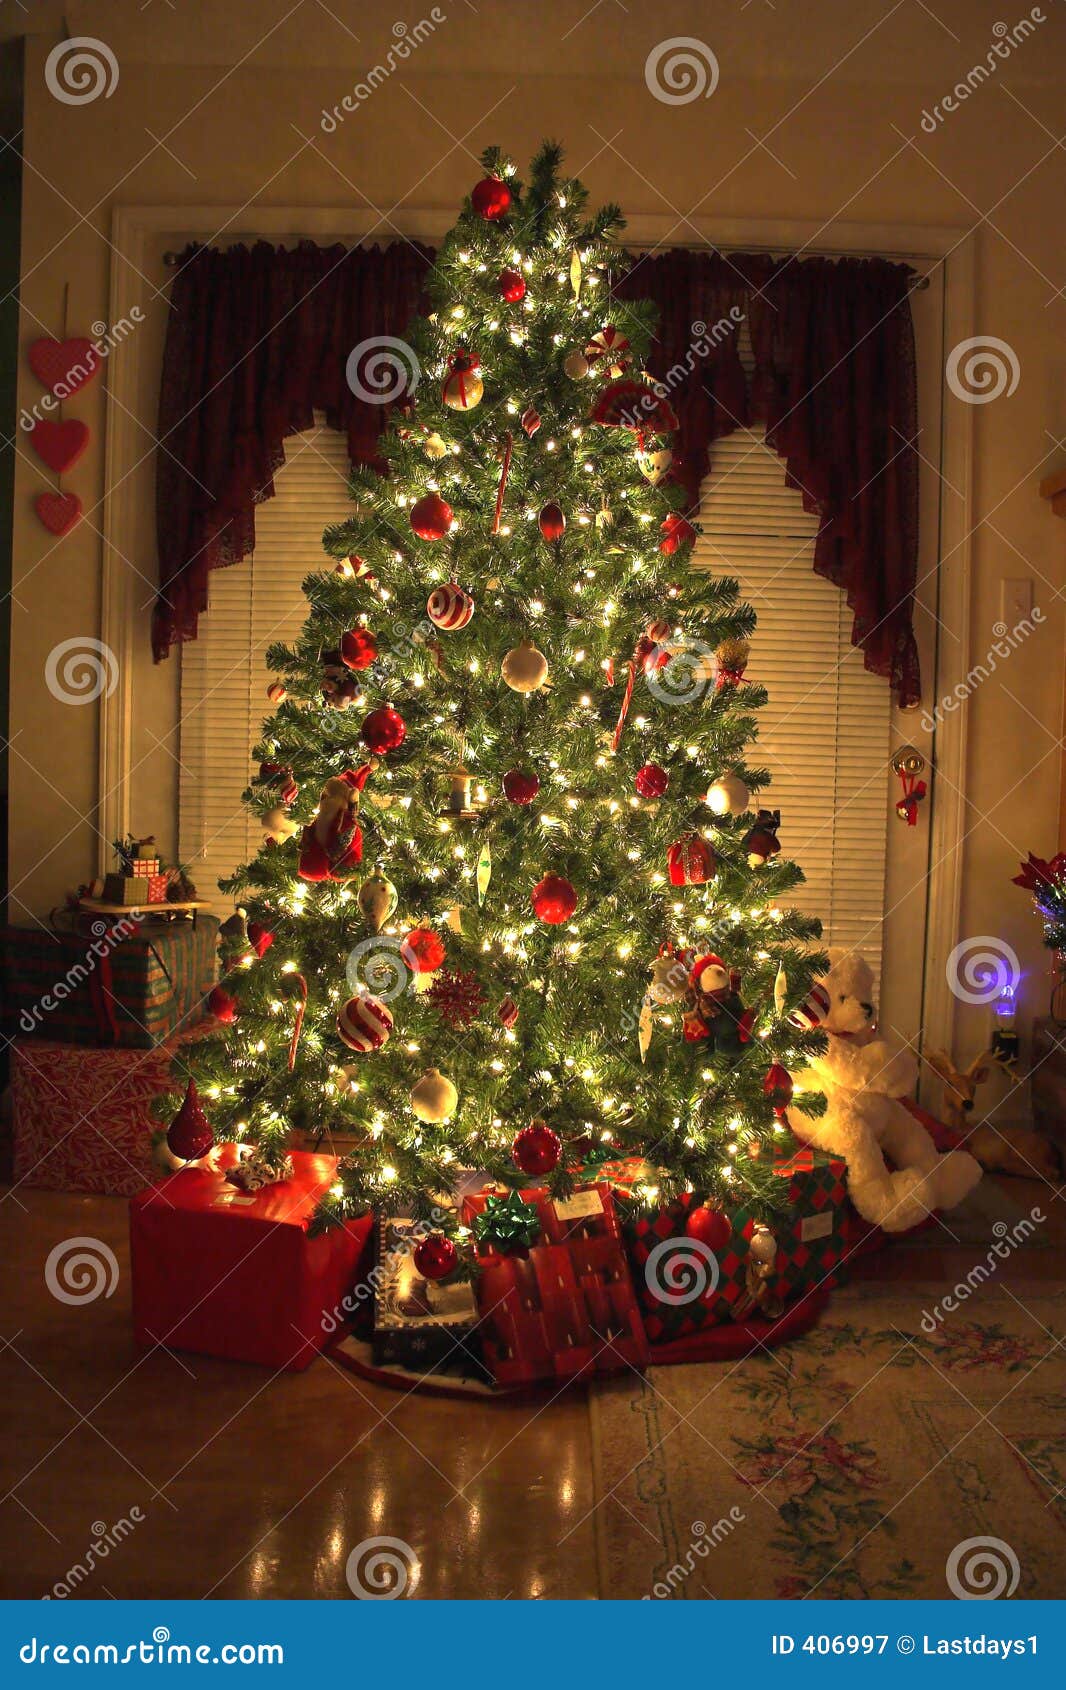 christmas-tree-406997.jpg